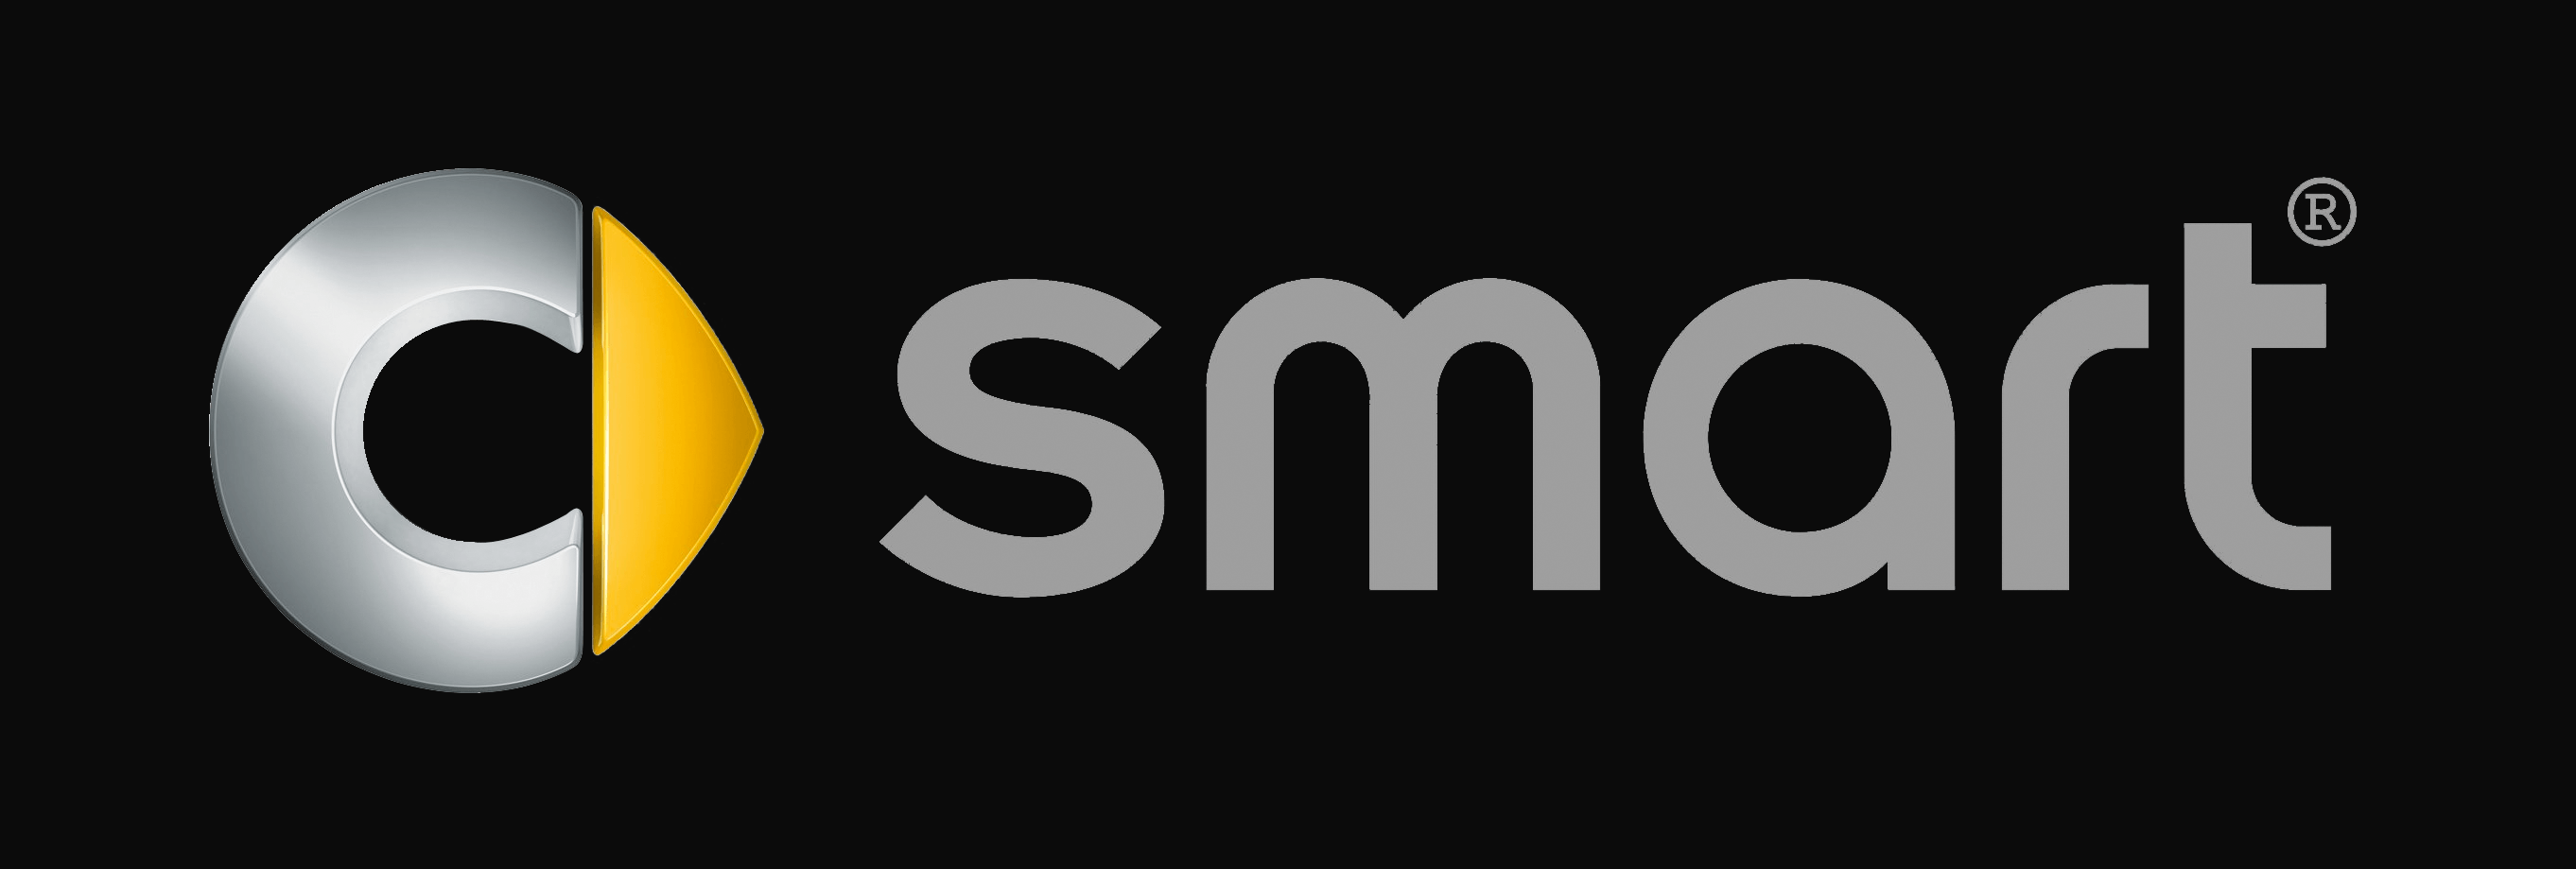 Smart Logo - smart Logo, smart Car Symbol Meaning And History | Car Brand Names.com